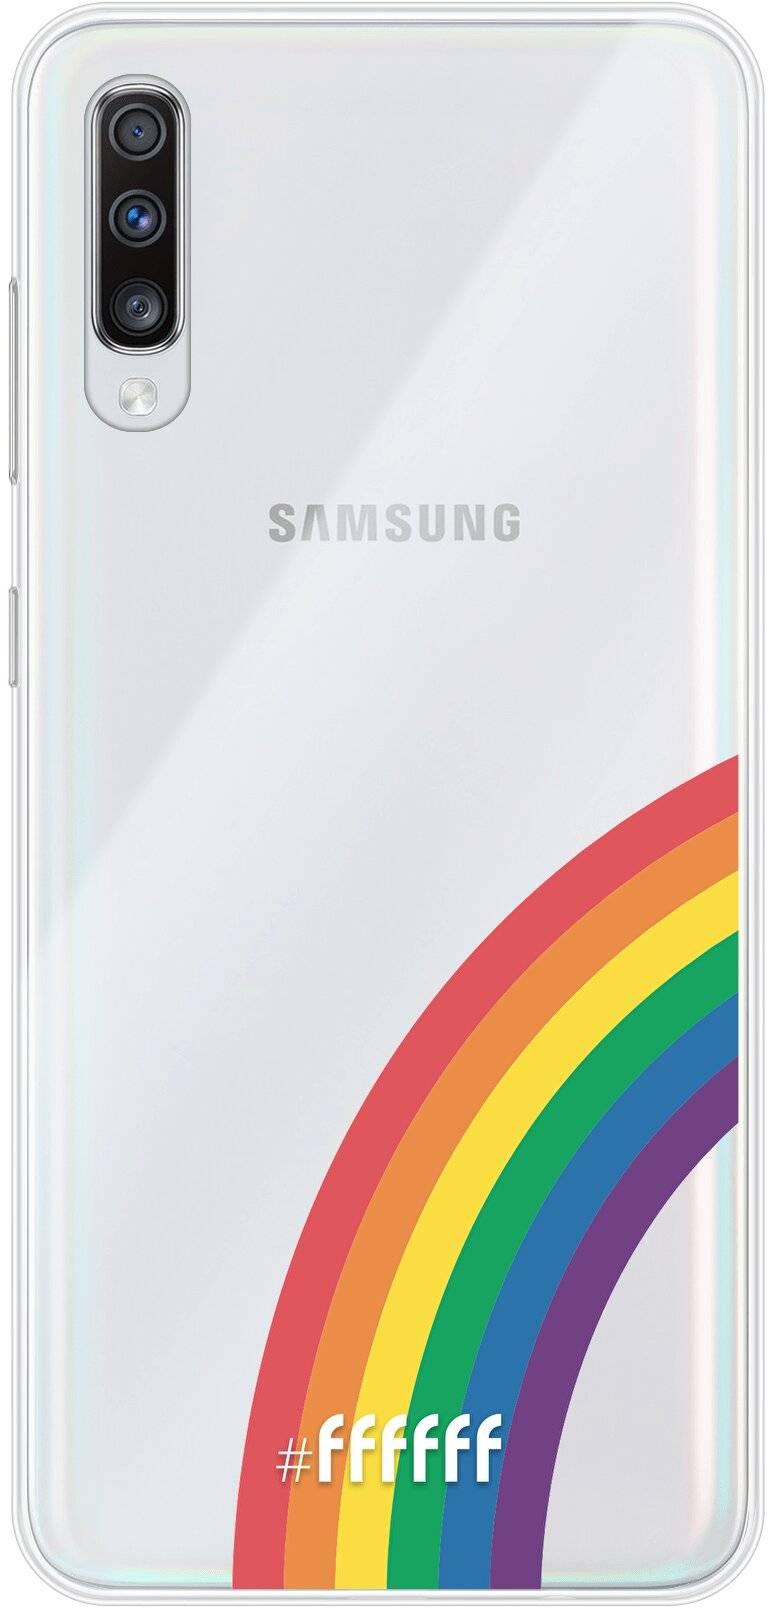 #LGBT - Rainbow Galaxy A70